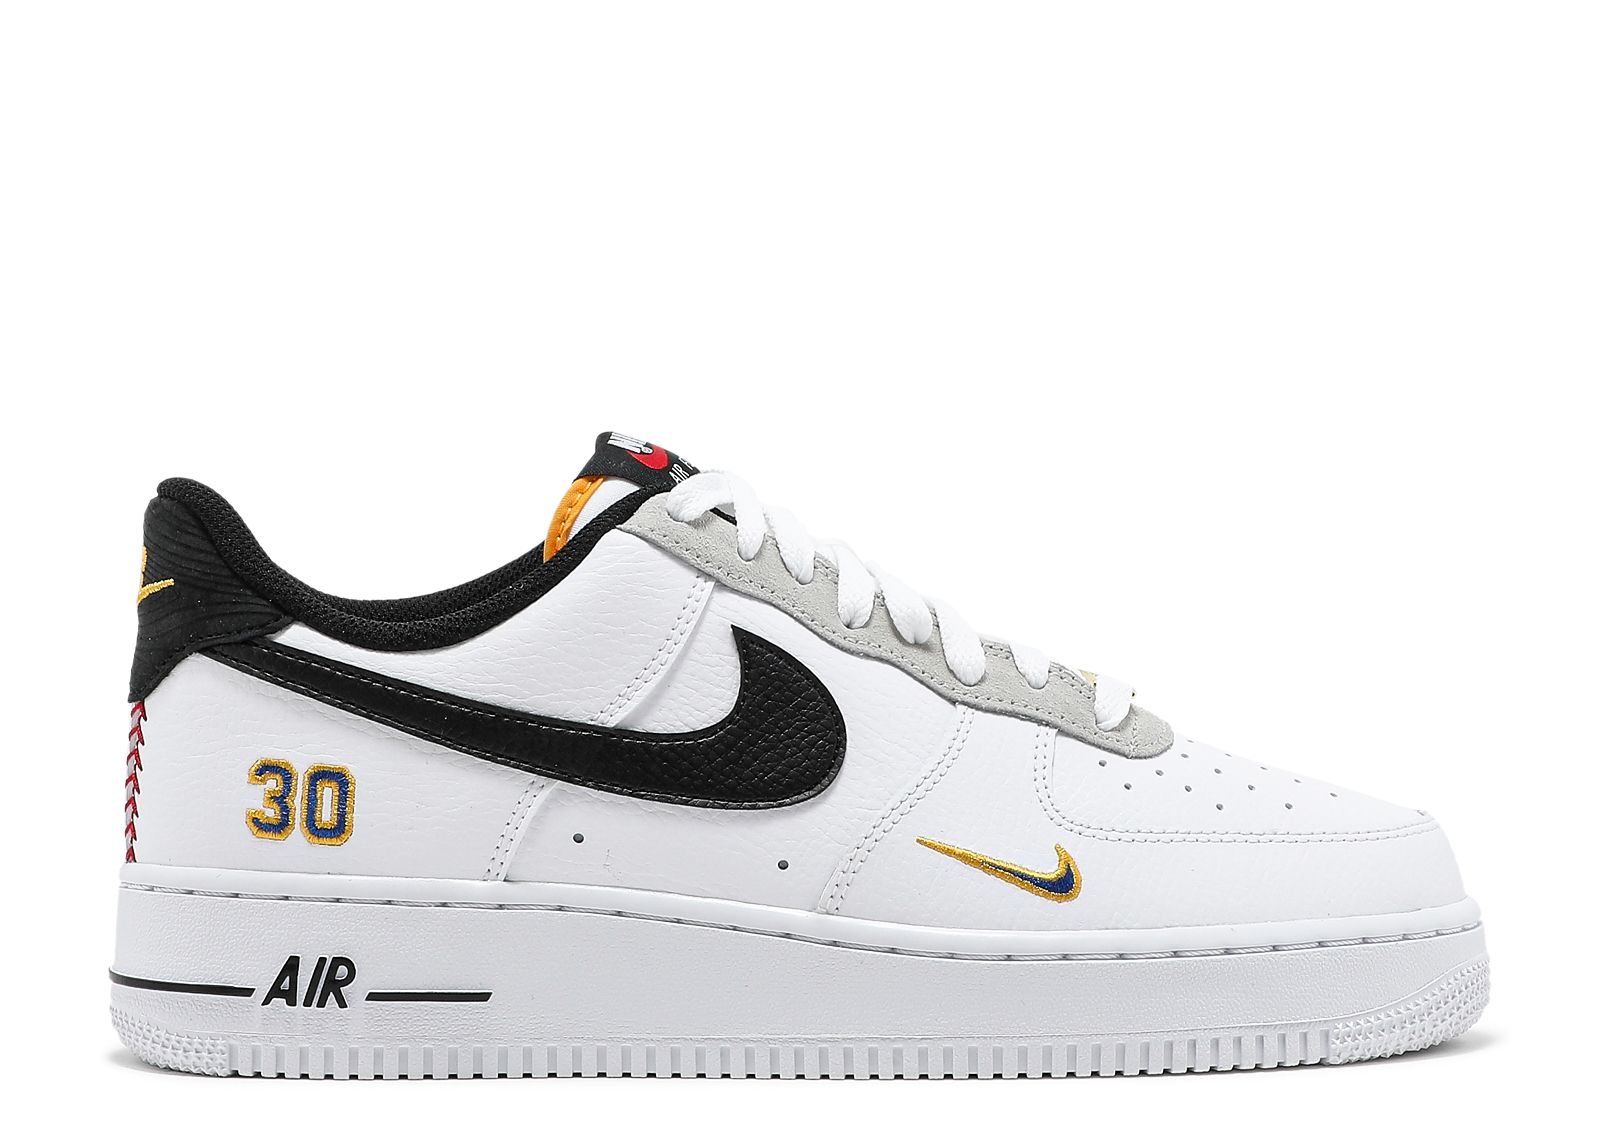 Nike Air Force 1 07 LV8 'Ken Griffey Jr./Sr.' Shoes - Size 11.5